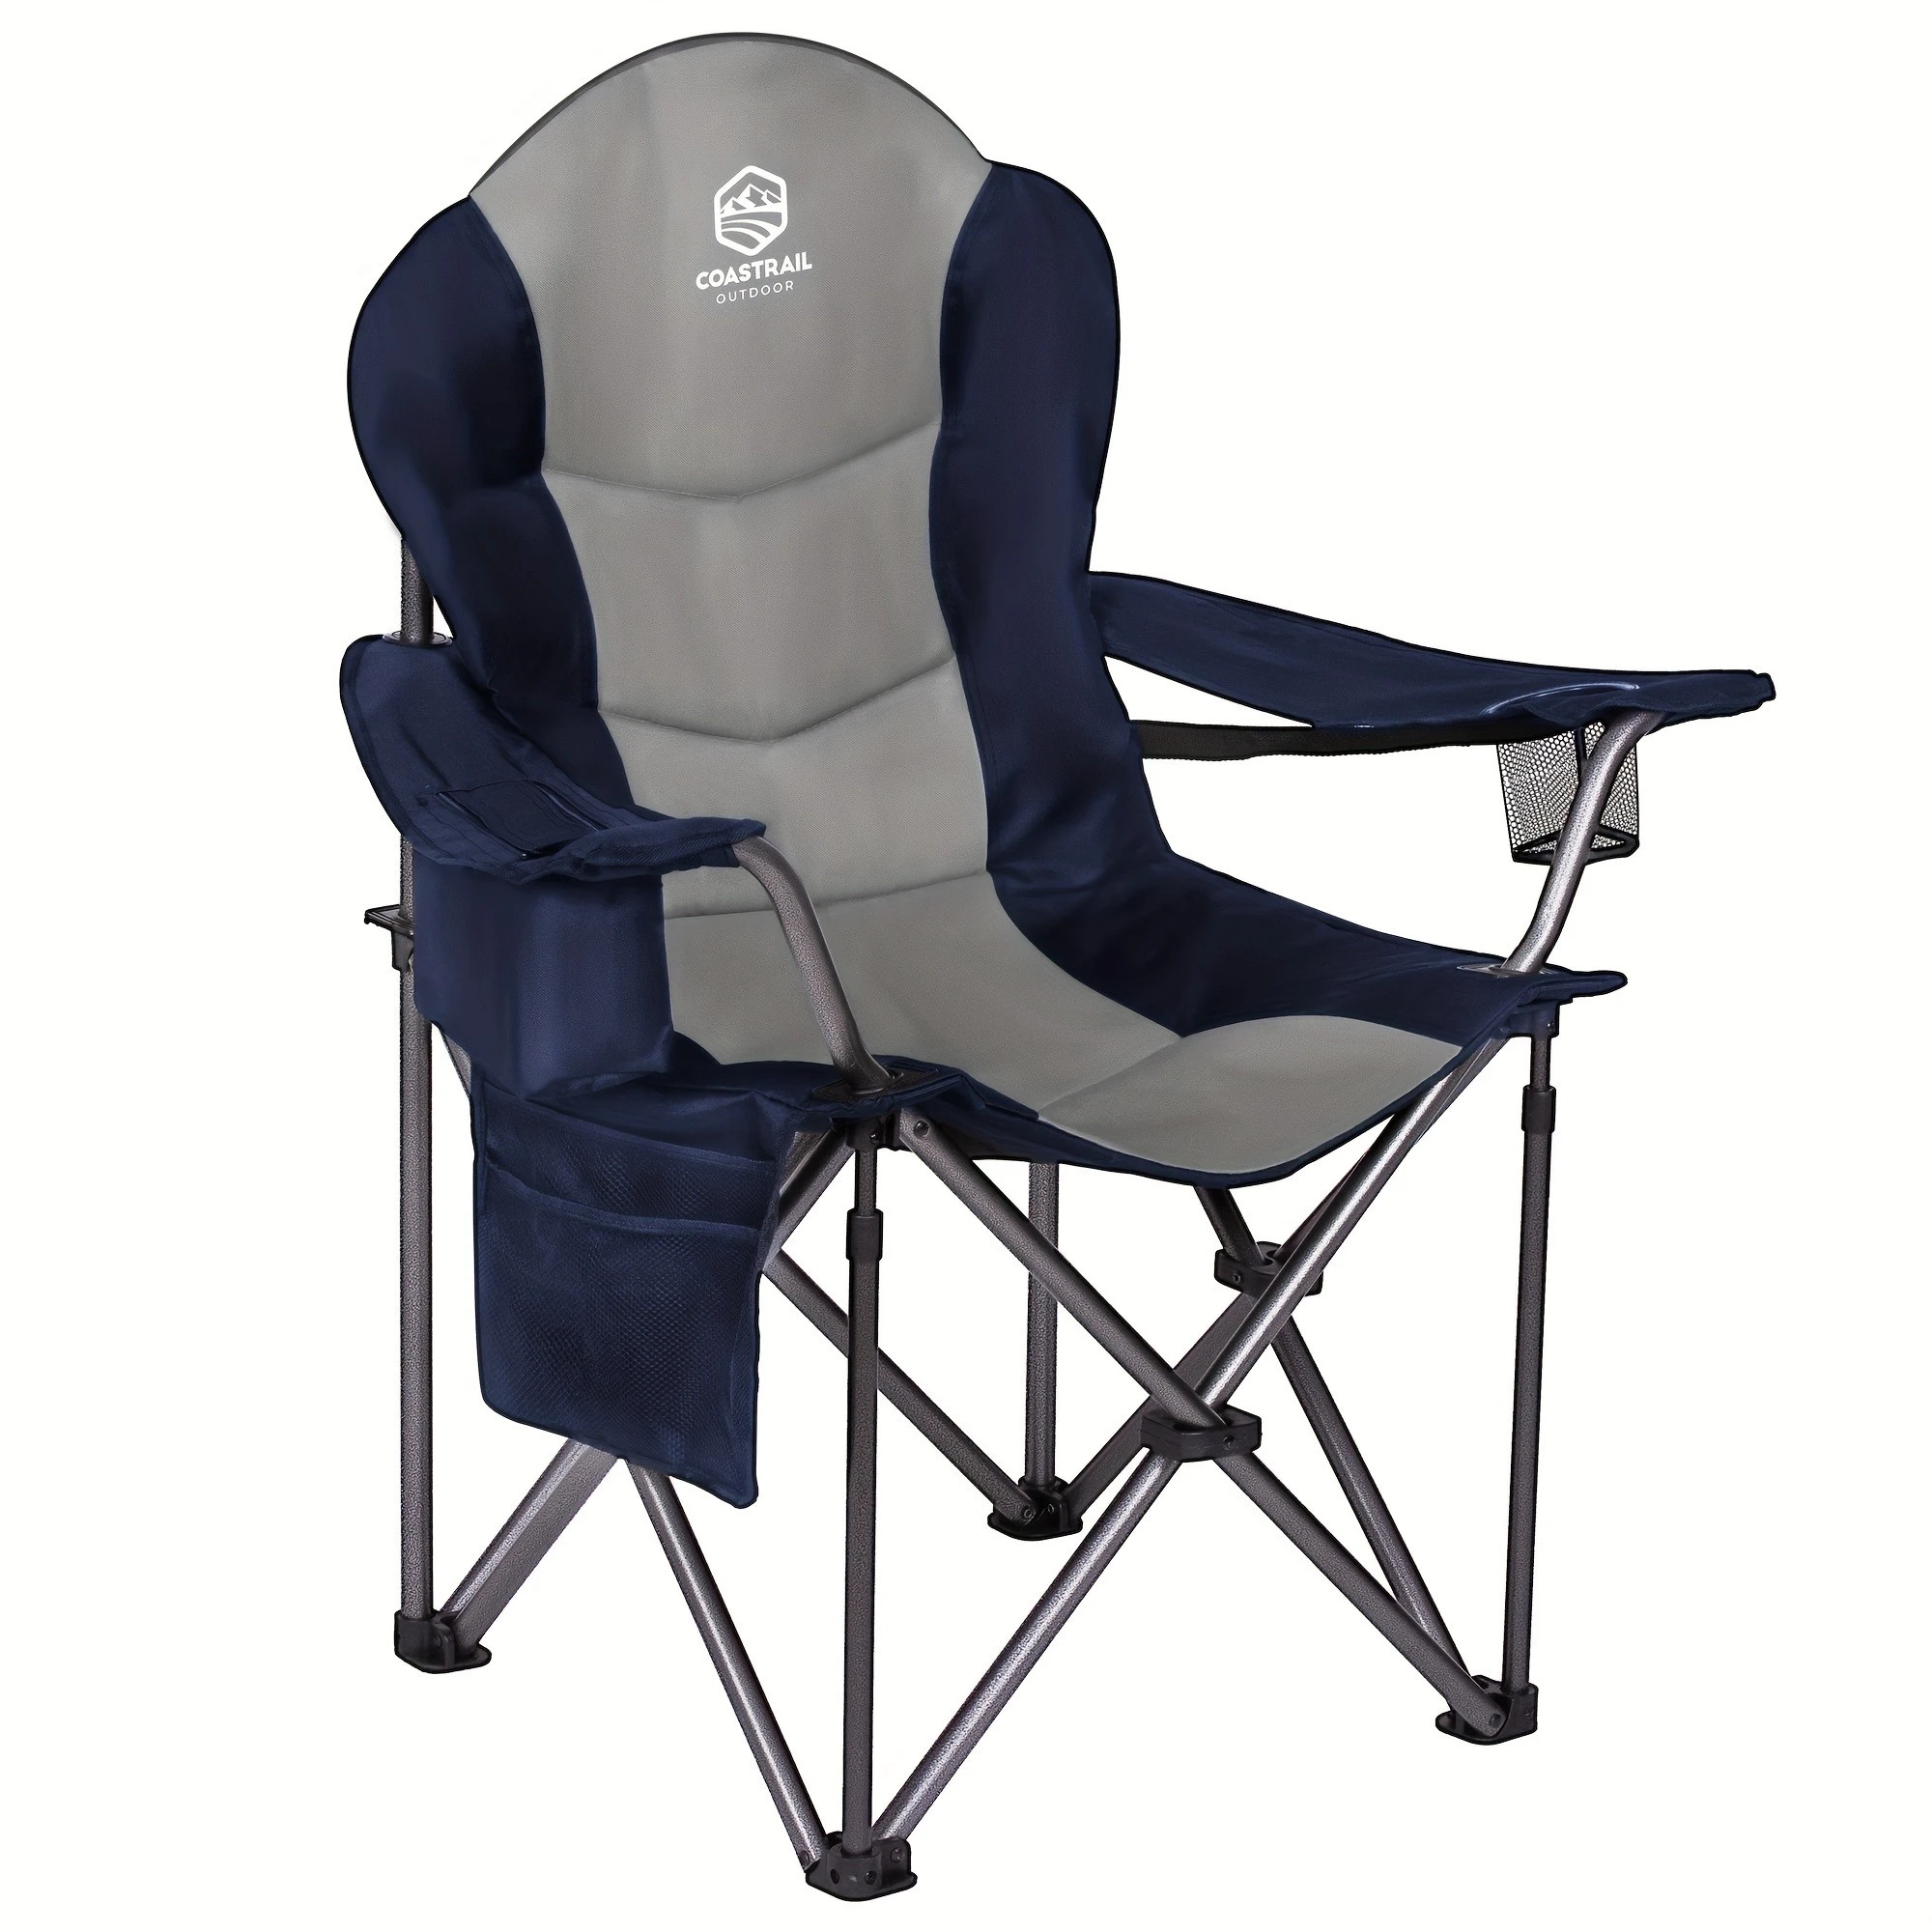 outdoor-camping-cadeiras-dobraveis-conveniente-para-transportar-com-capacidade-multipla